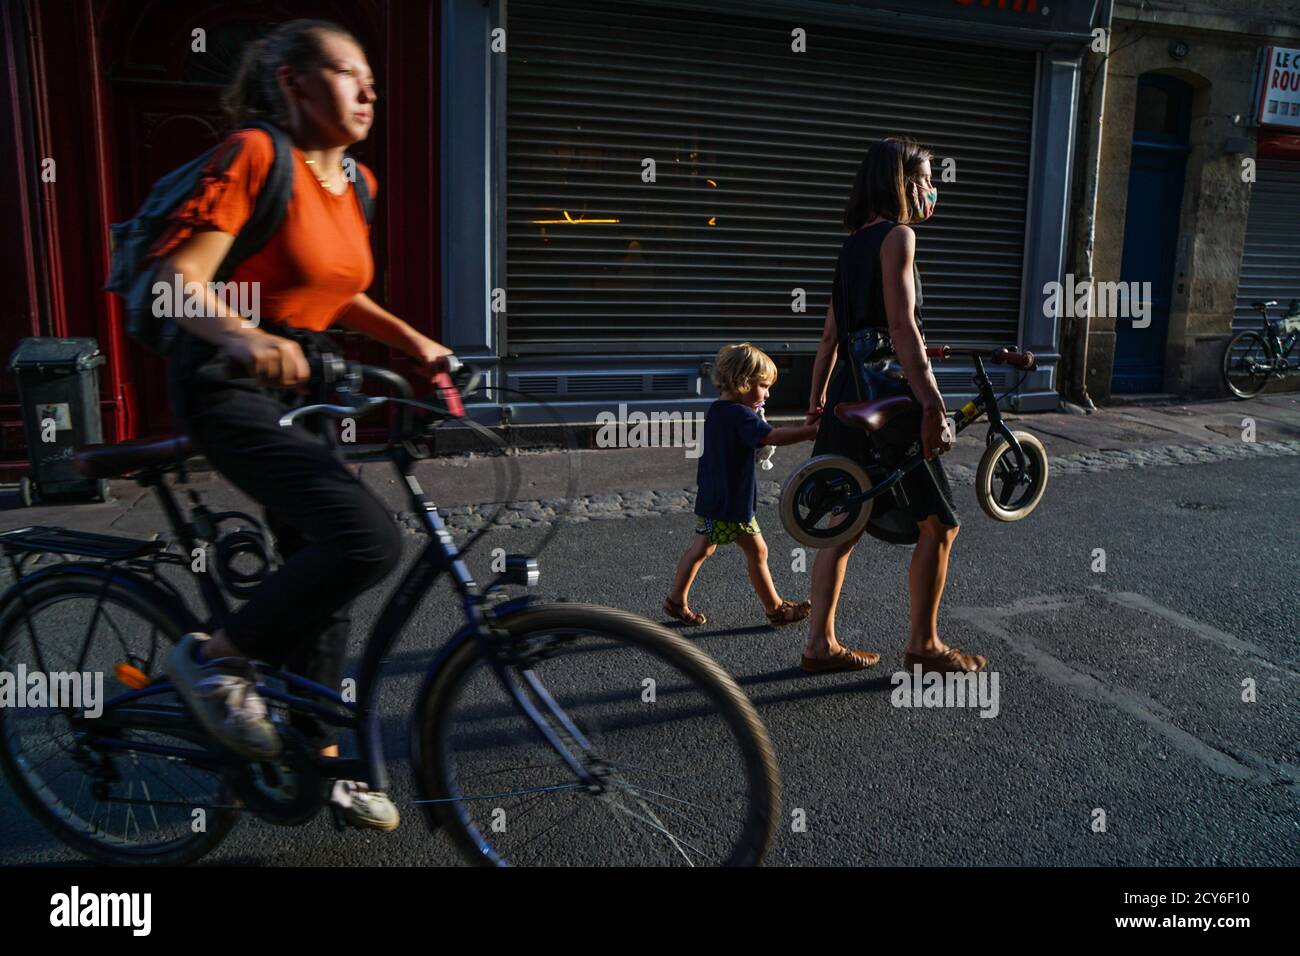 Bordeaux - 08/27/2020: Une fille à vélo passe devant une mère avec un bycicle et un enfant à la main dans les rues Banque D'Images